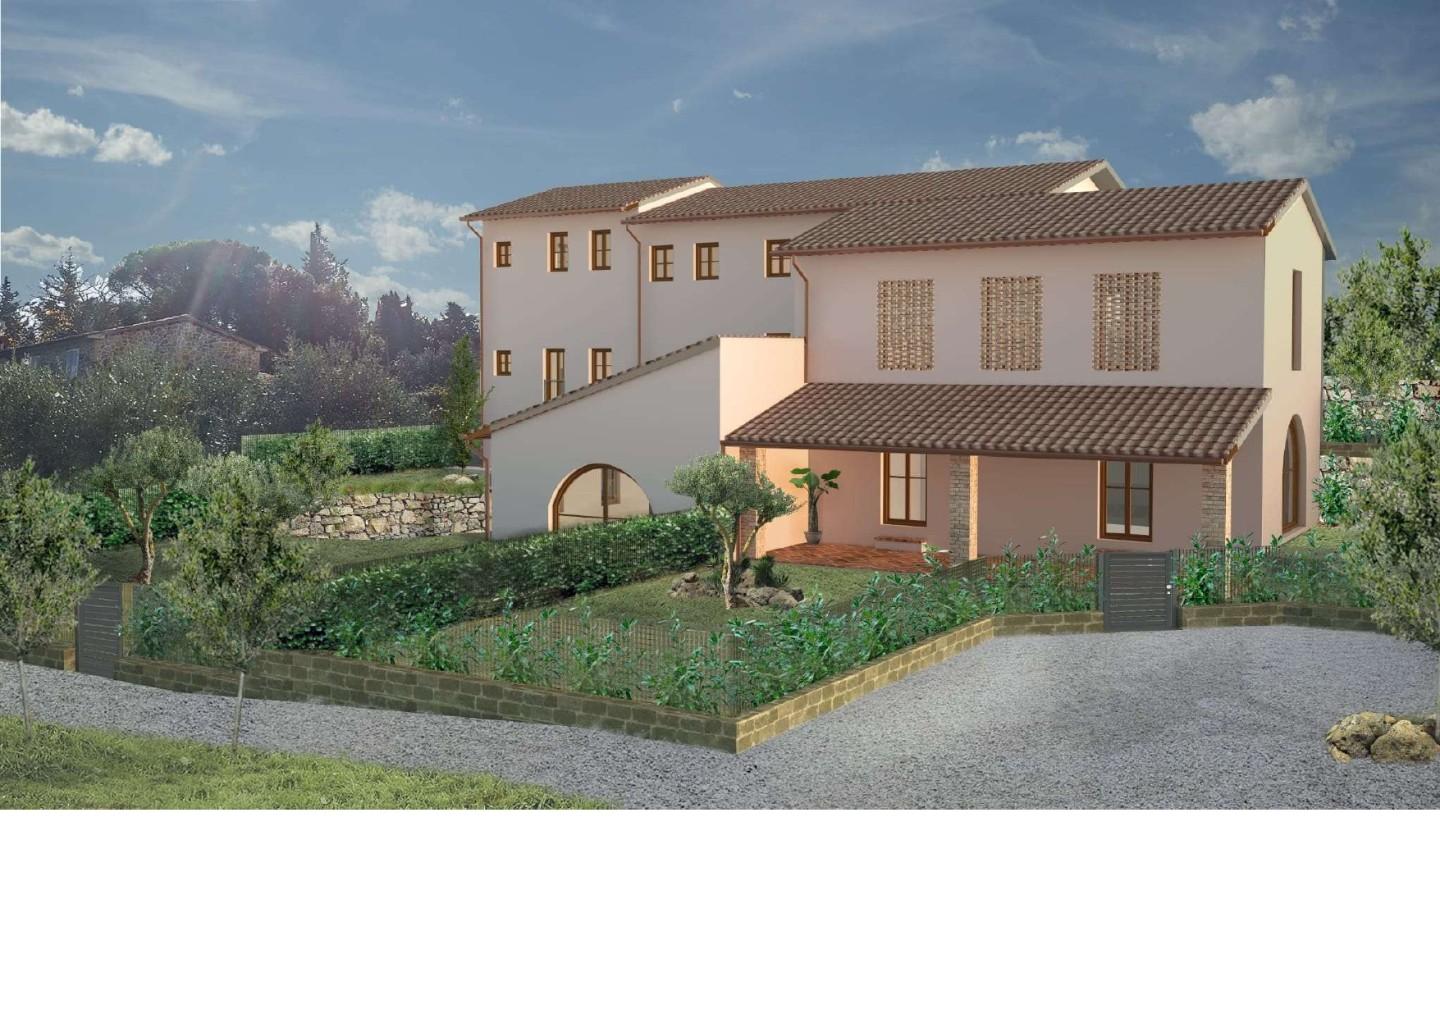 Soluzione Indipendente in vendita a Gambassi Terme, 3 locali, prezzo € 200.000 | PortaleAgenzieImmobiliari.it